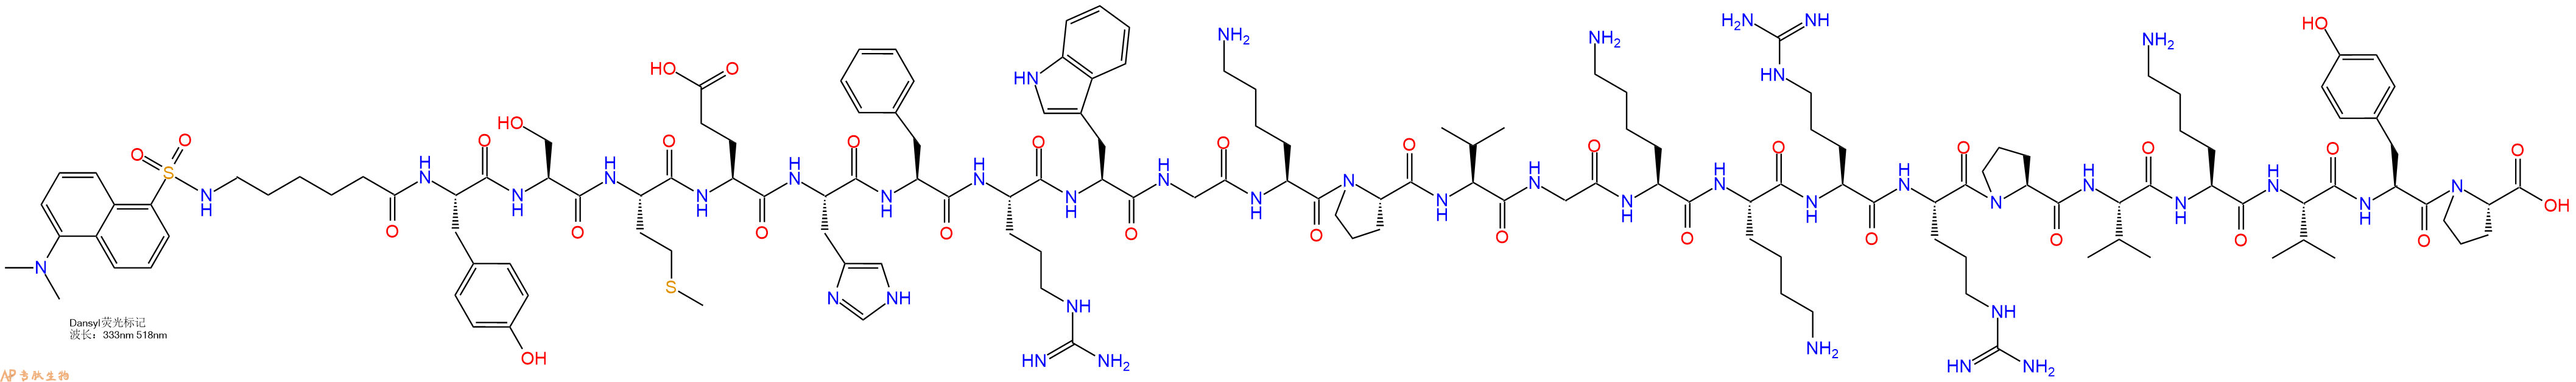 专肽生物产品Dansyl-Ahx-Tyr-Ser-Met-Glu-His-Phe-Arg-Trp-Gly-Lys